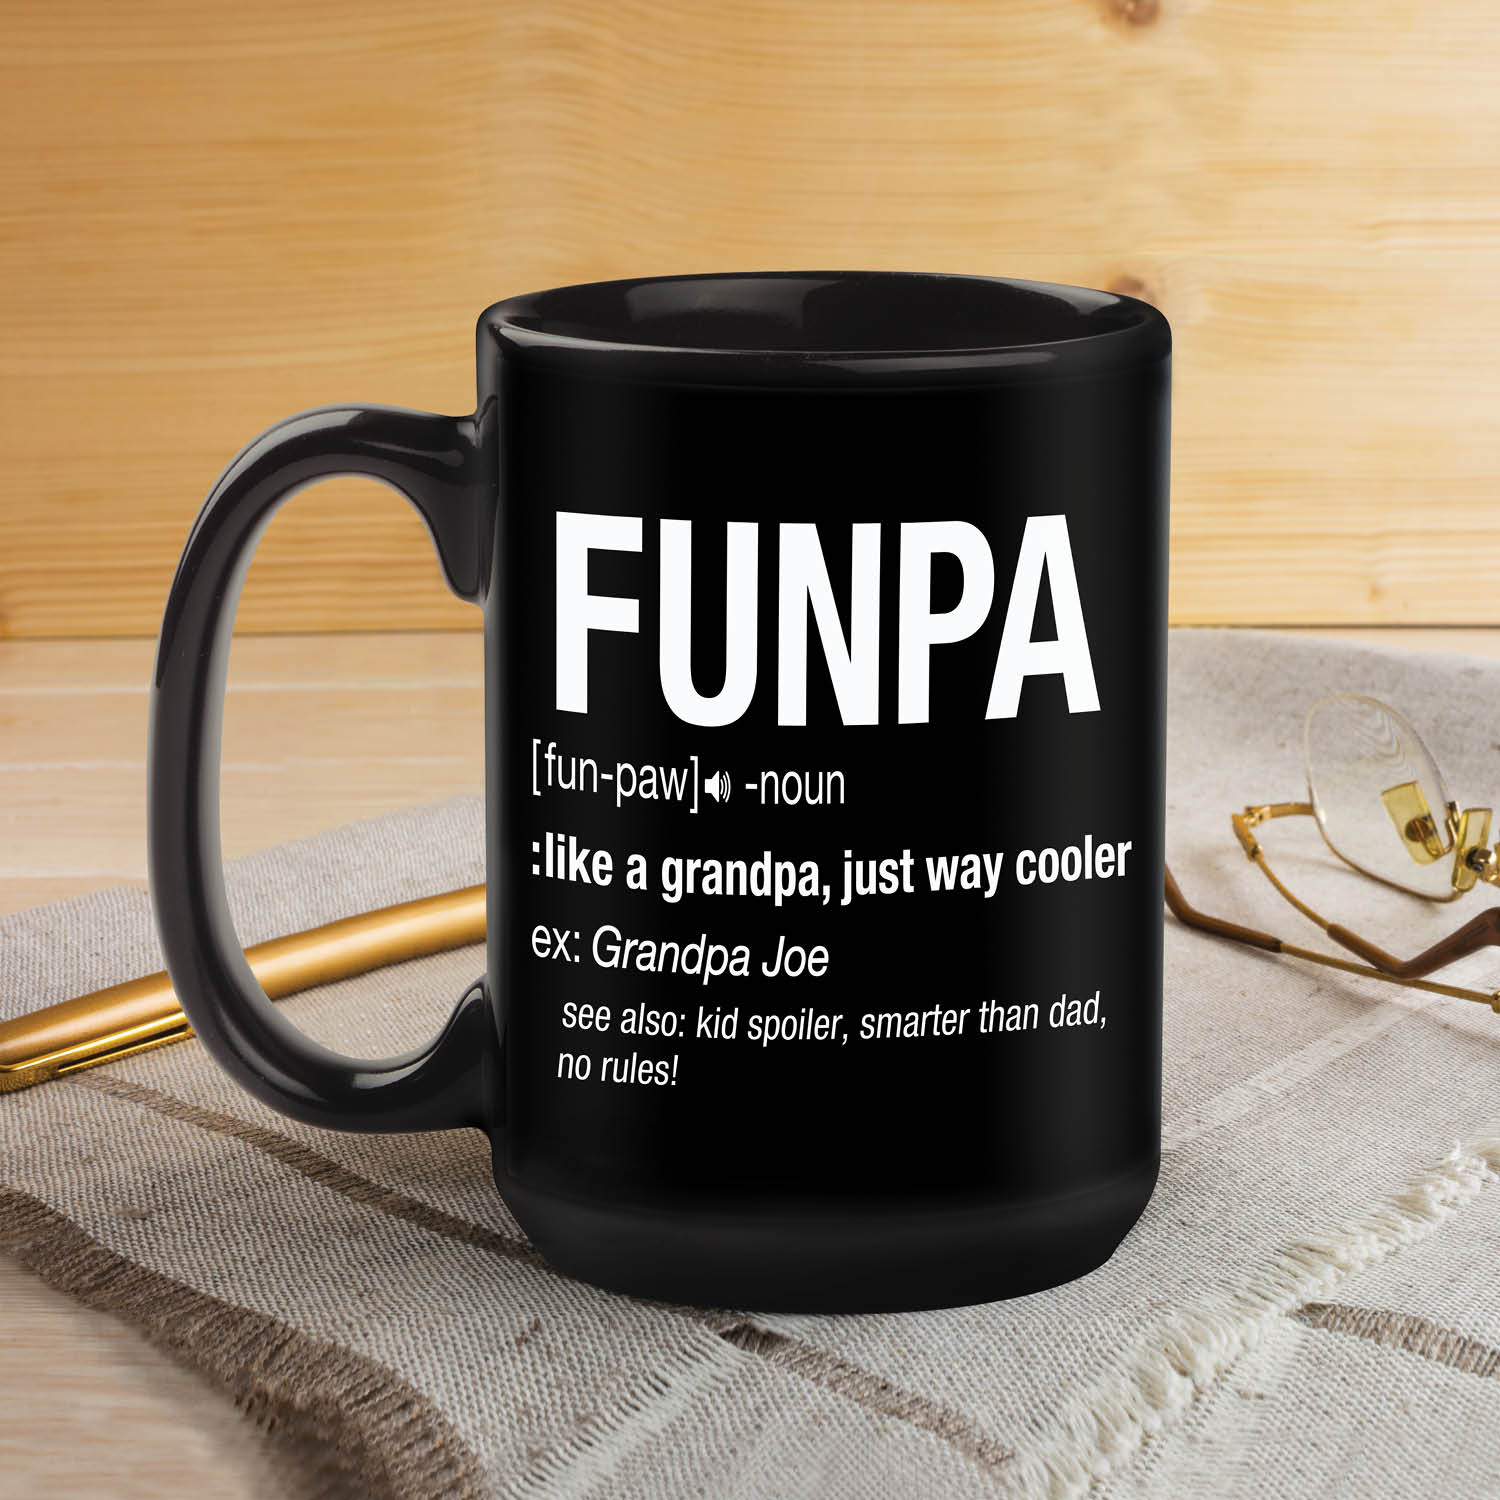 Funpa Personalized Black Coffee Mug - 15oz